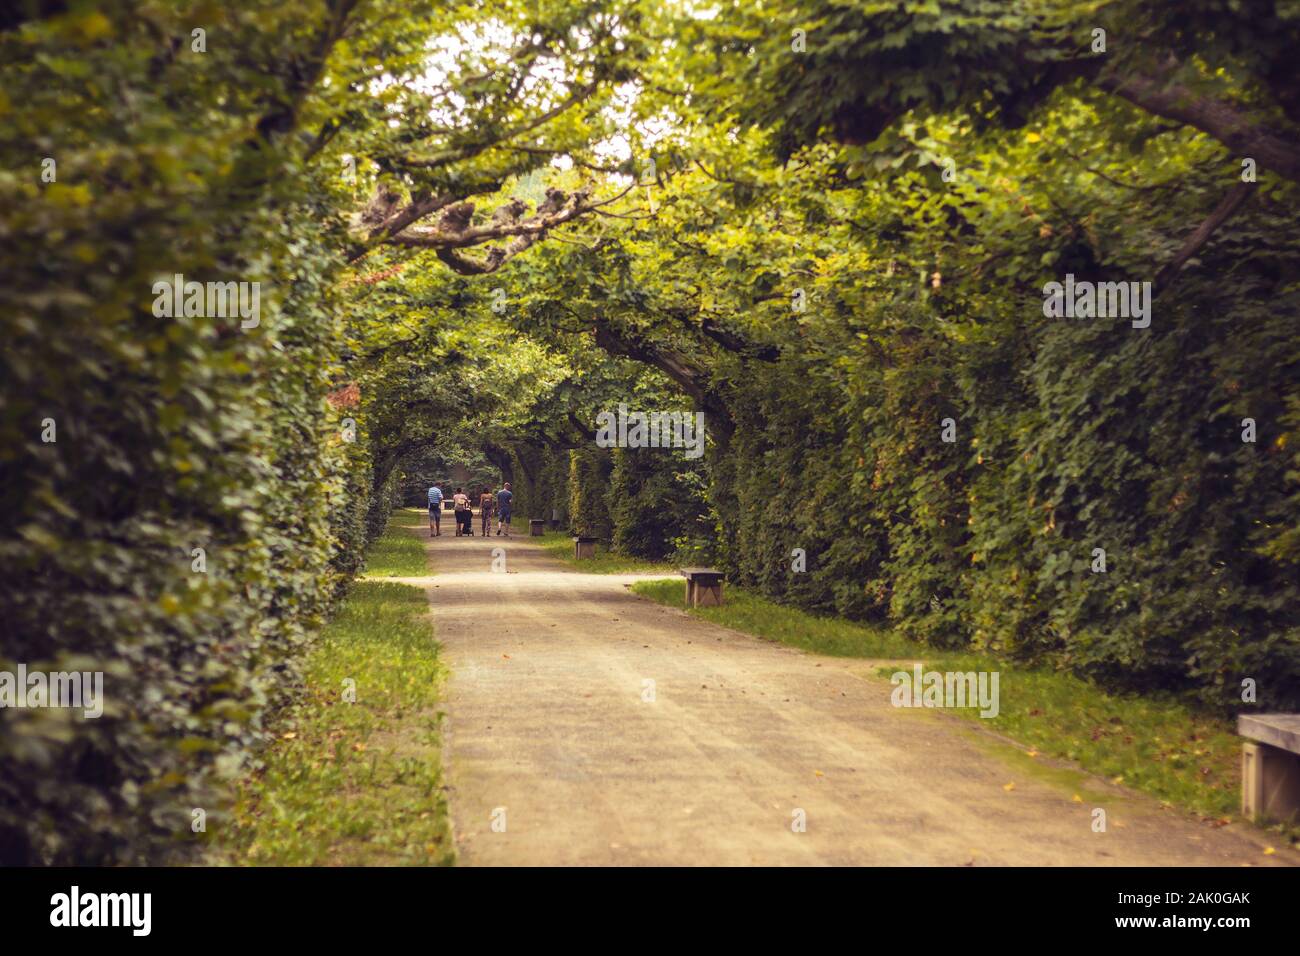 Straße durch die Gasse - Baumtunnel im Park, Menschen im Hintergrund (Blumengarten in Kromeriz, Tschechische republik) Stockfoto